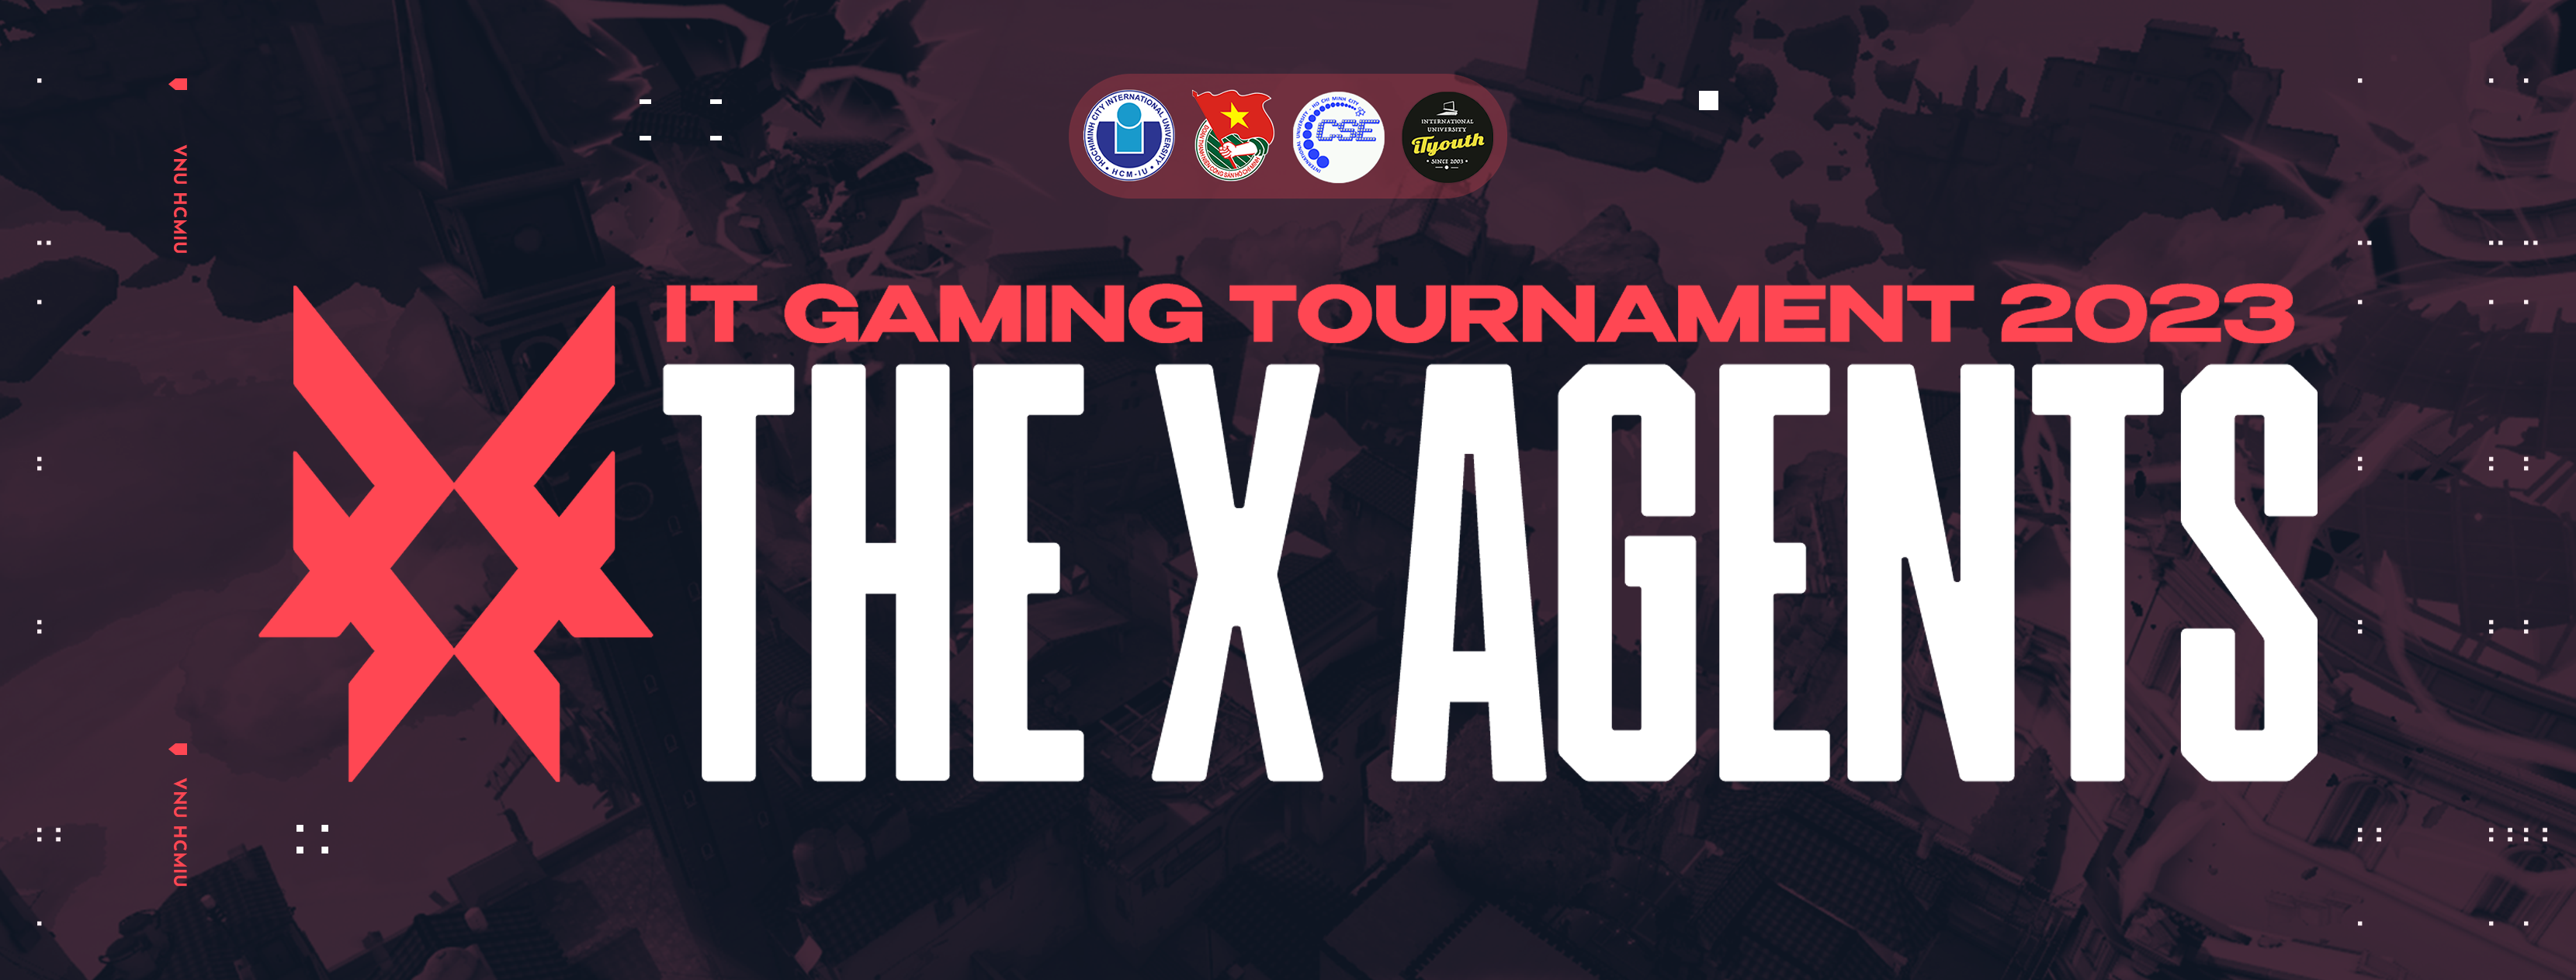 Chính thức công bố giải đấu IT GAMING TOURNAMENT 2023: THE X AGENT, sân chơi Esports dành cho cộng đồng sinh viên khu vực TP. Hồ Chí Minh